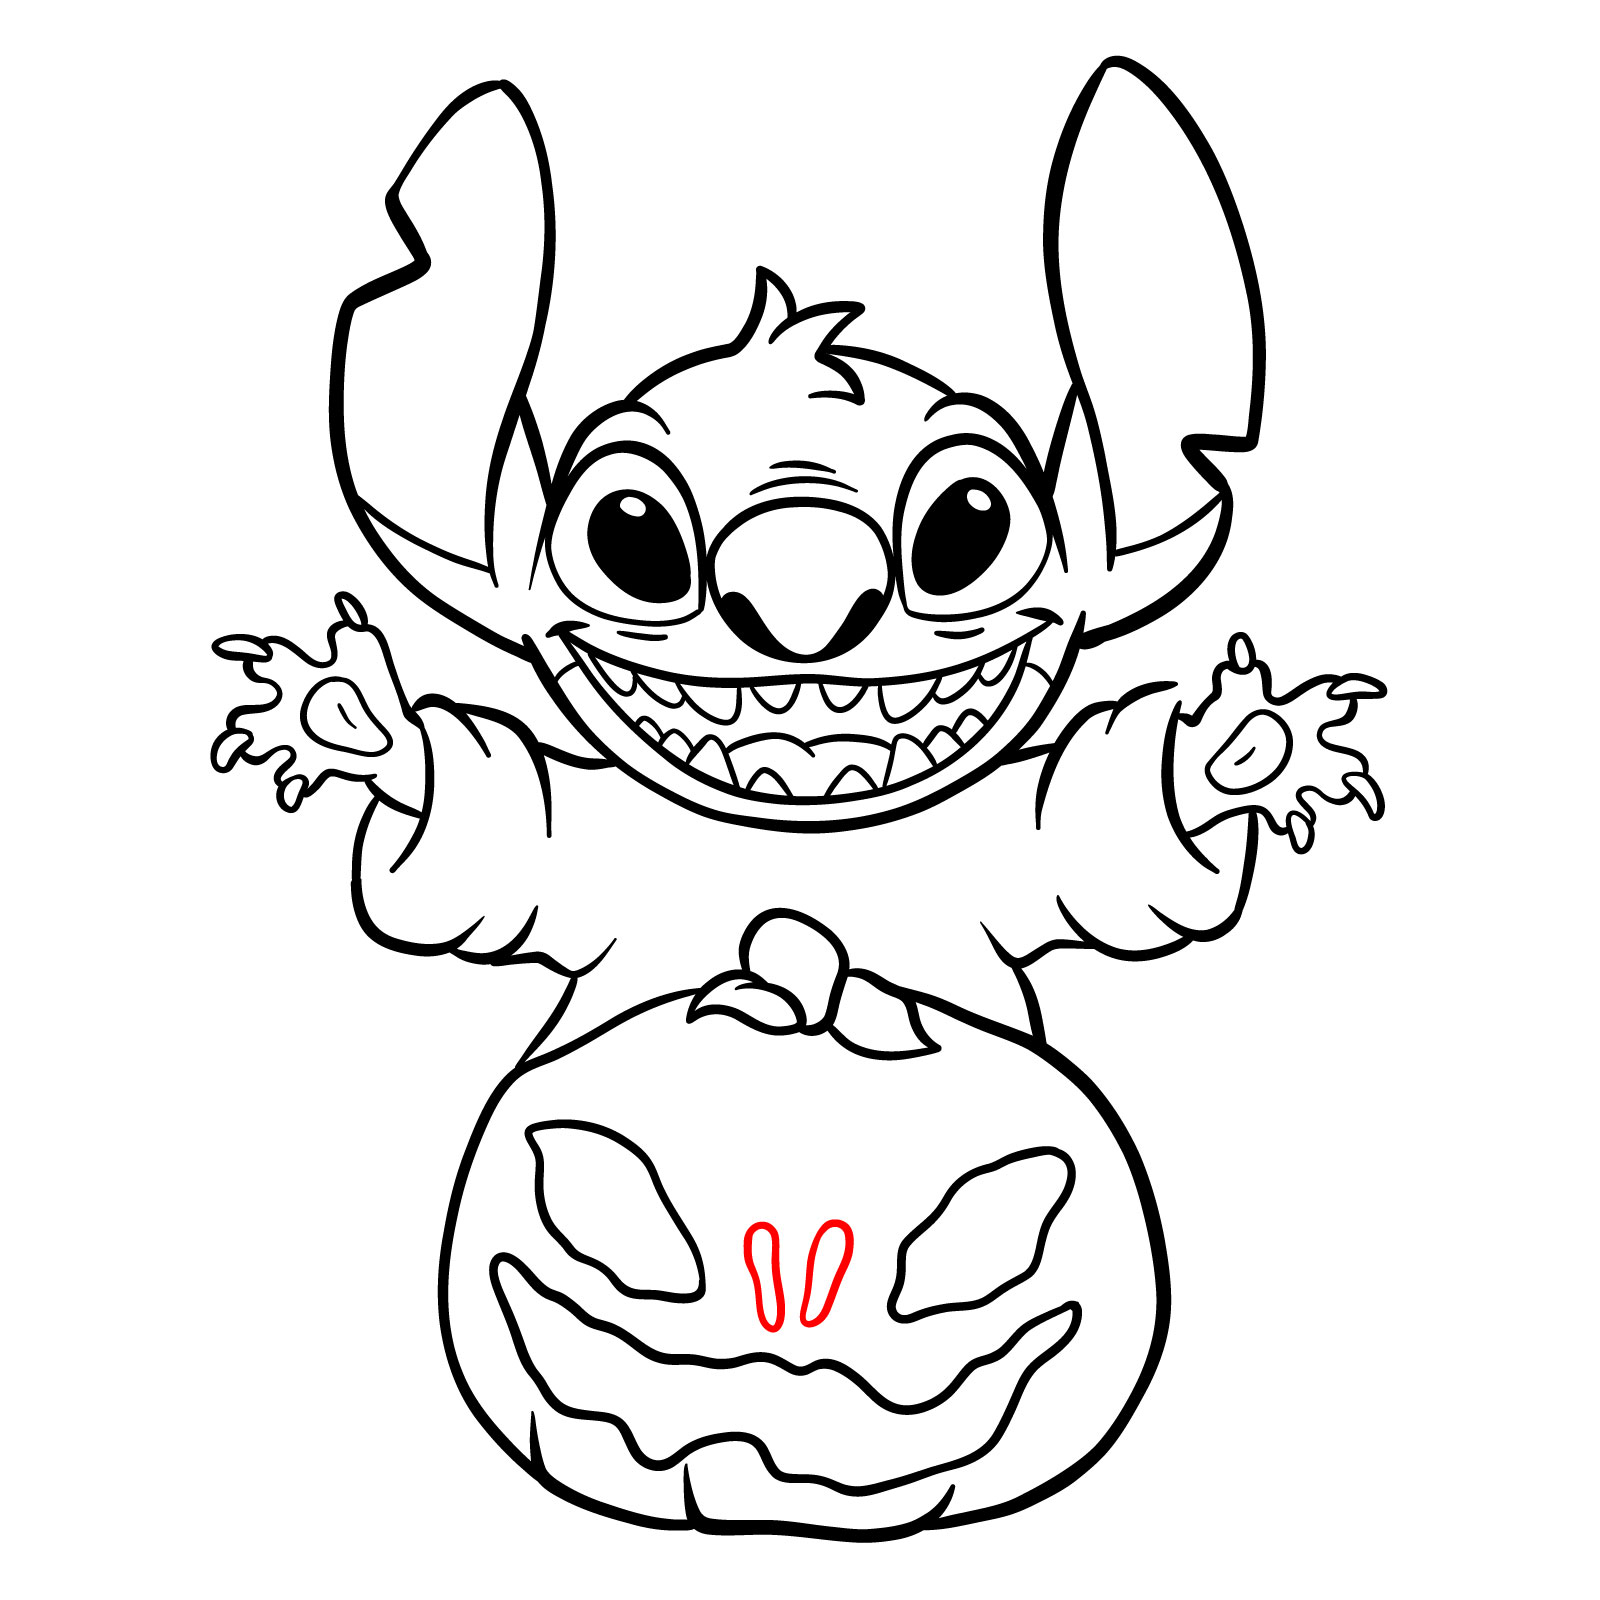 How to Draw Halloween Stitch with a jack-o'-lantern - step 26